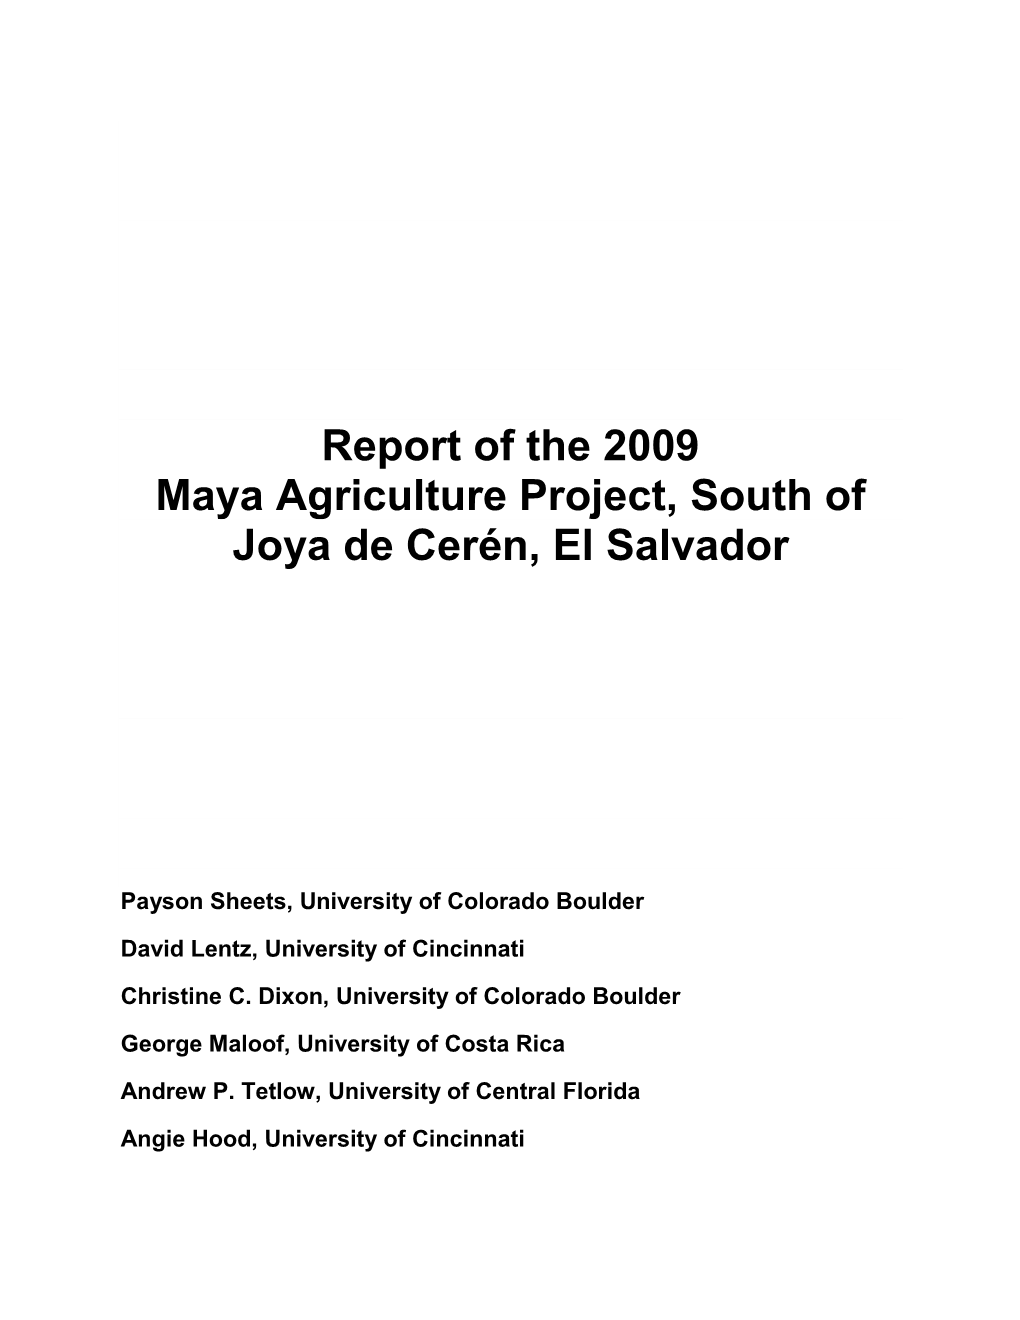 Report of the 2009 Maya Agriculture Project, South of Joya De Cerén, El Salvador